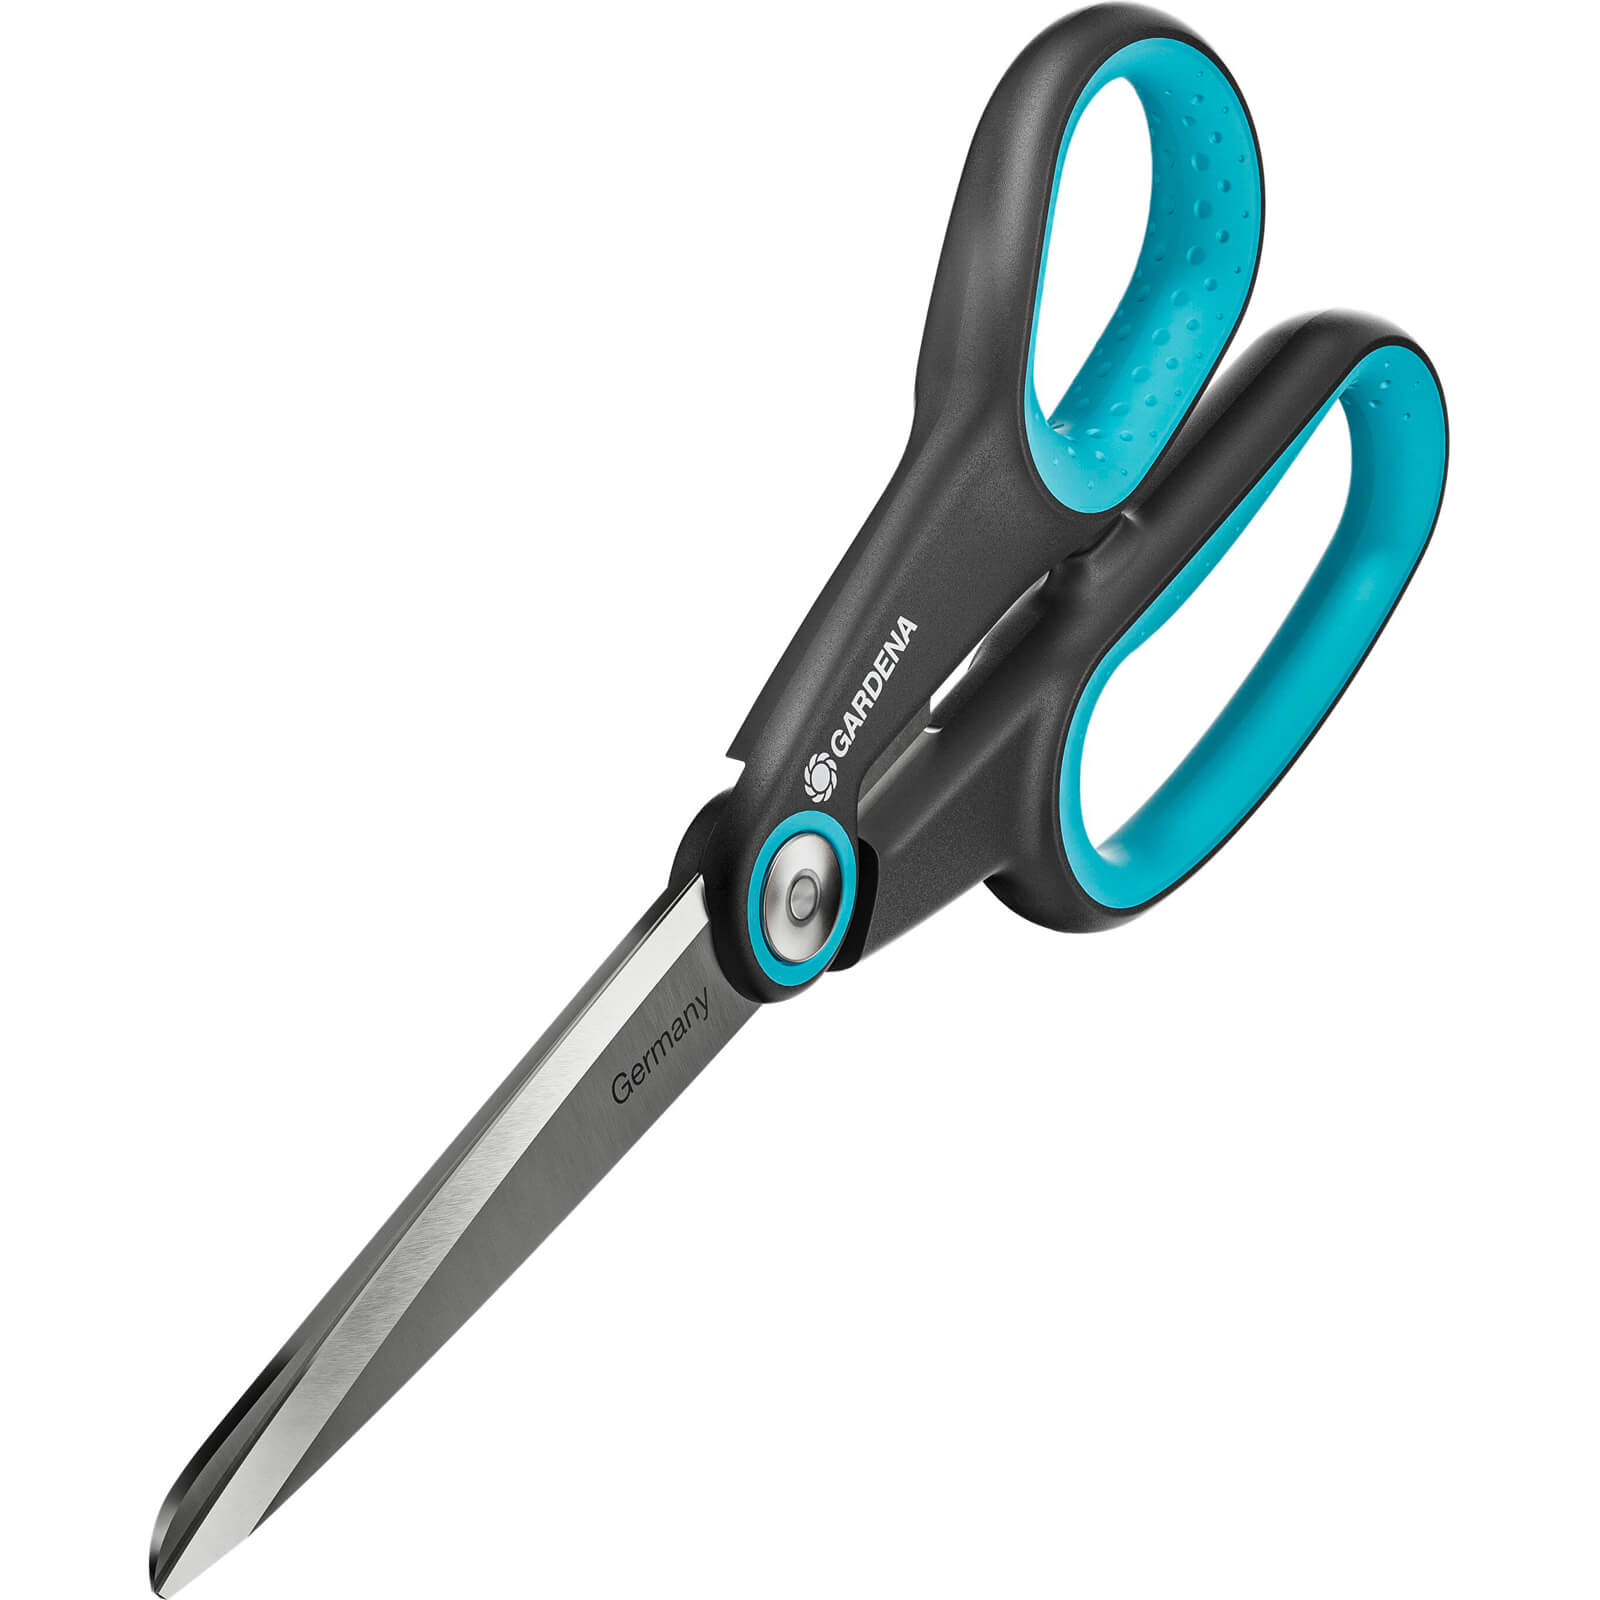 Gardena MULTICUT Multi Purpose Scissors